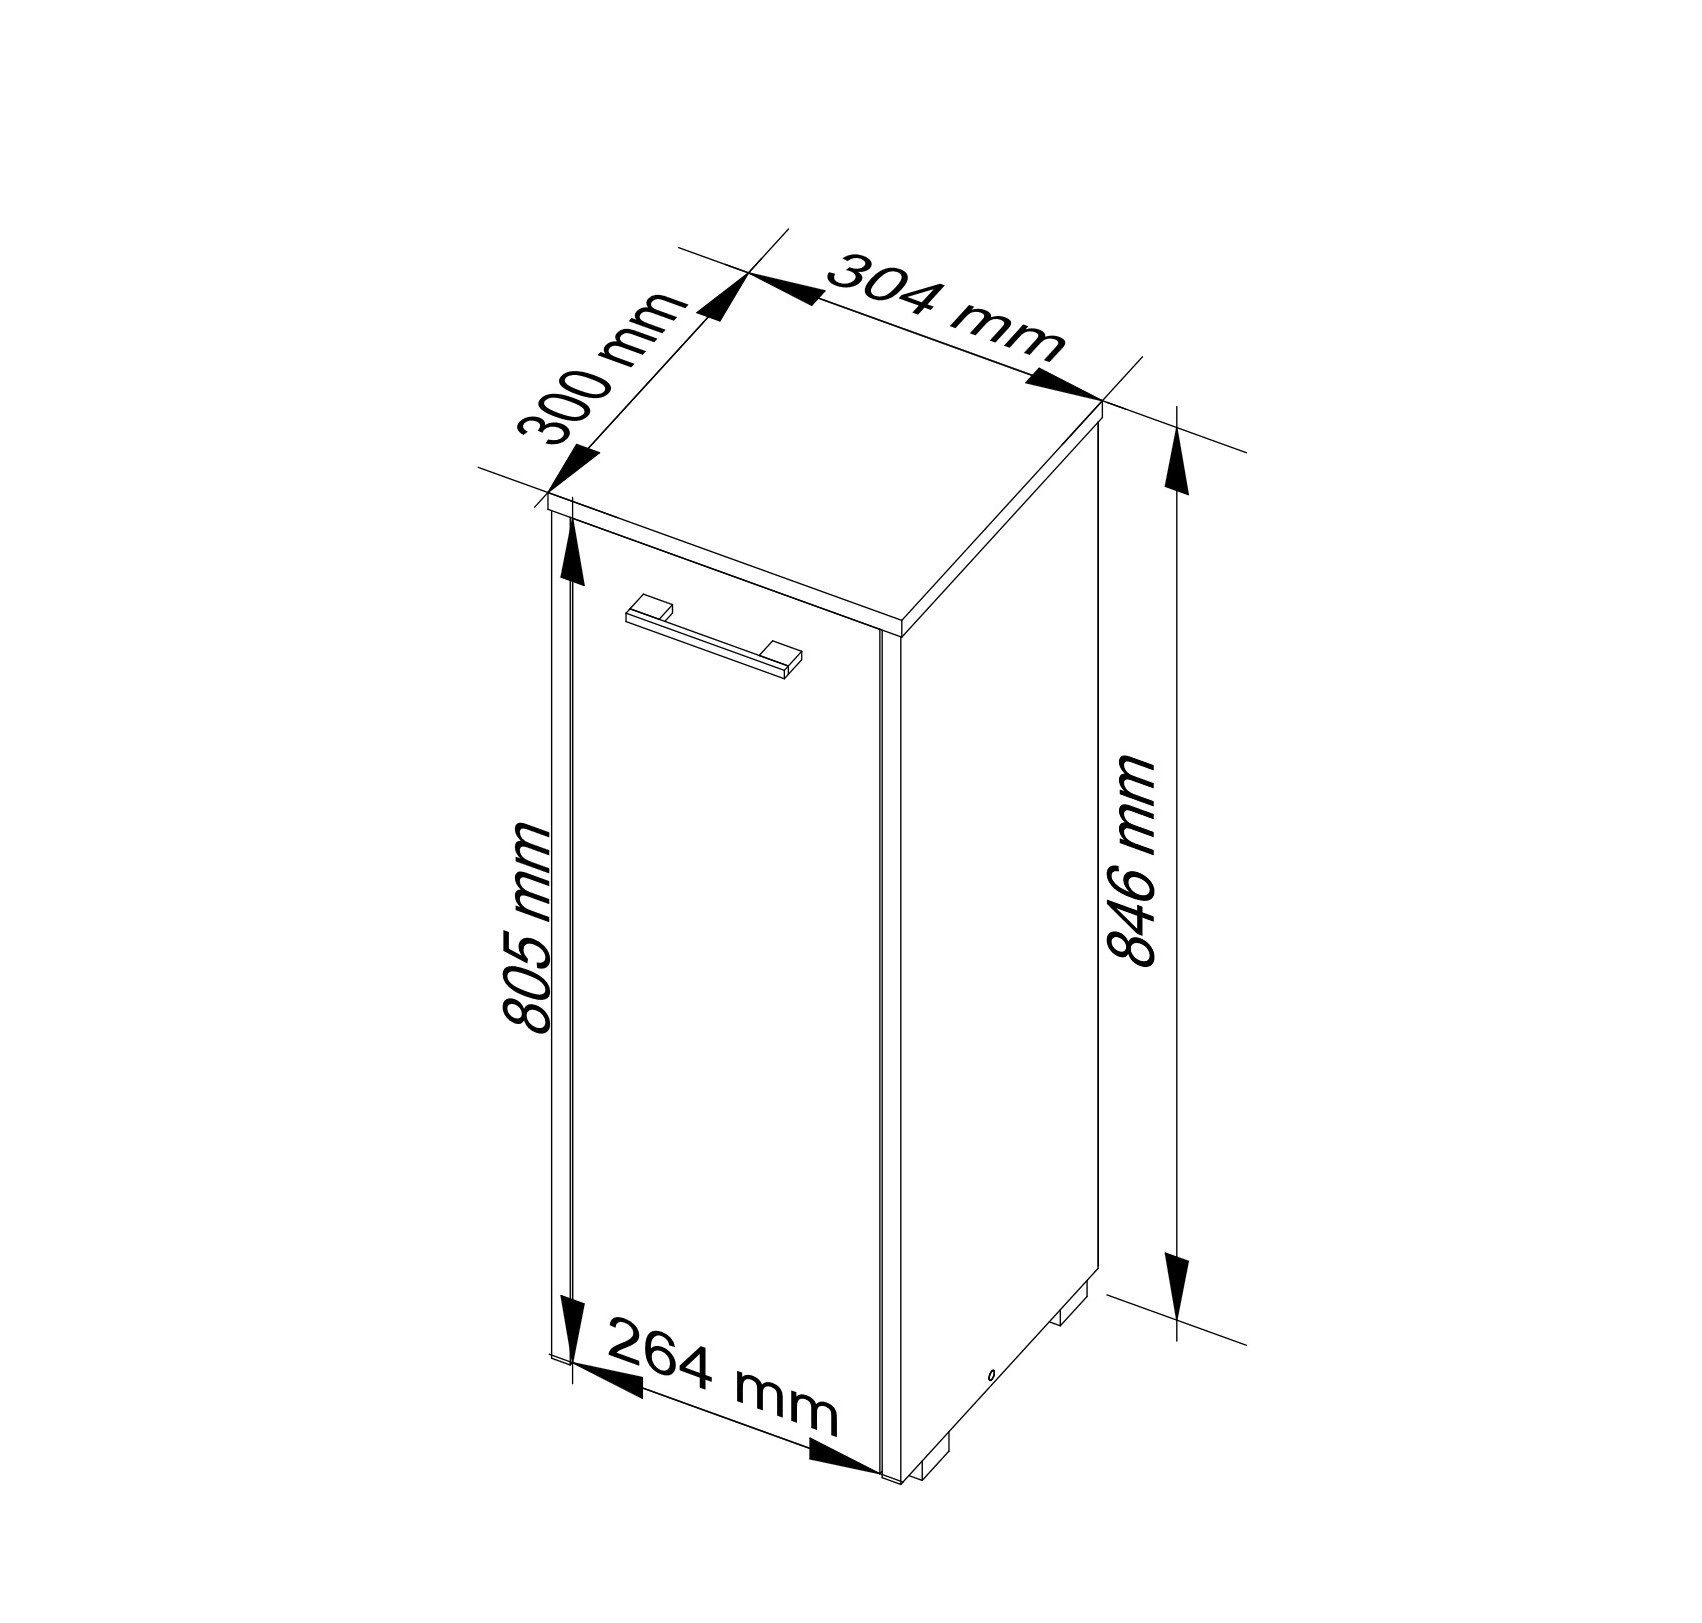 Meble AKORD - Szafka łazienkowa FIN Dąb Sonoma 30 cm 1 drzwi kolor Dąb Sonoma mat 2 półki 30x30x82 cm - Wymiary toaletki AKORD - 5907504389455